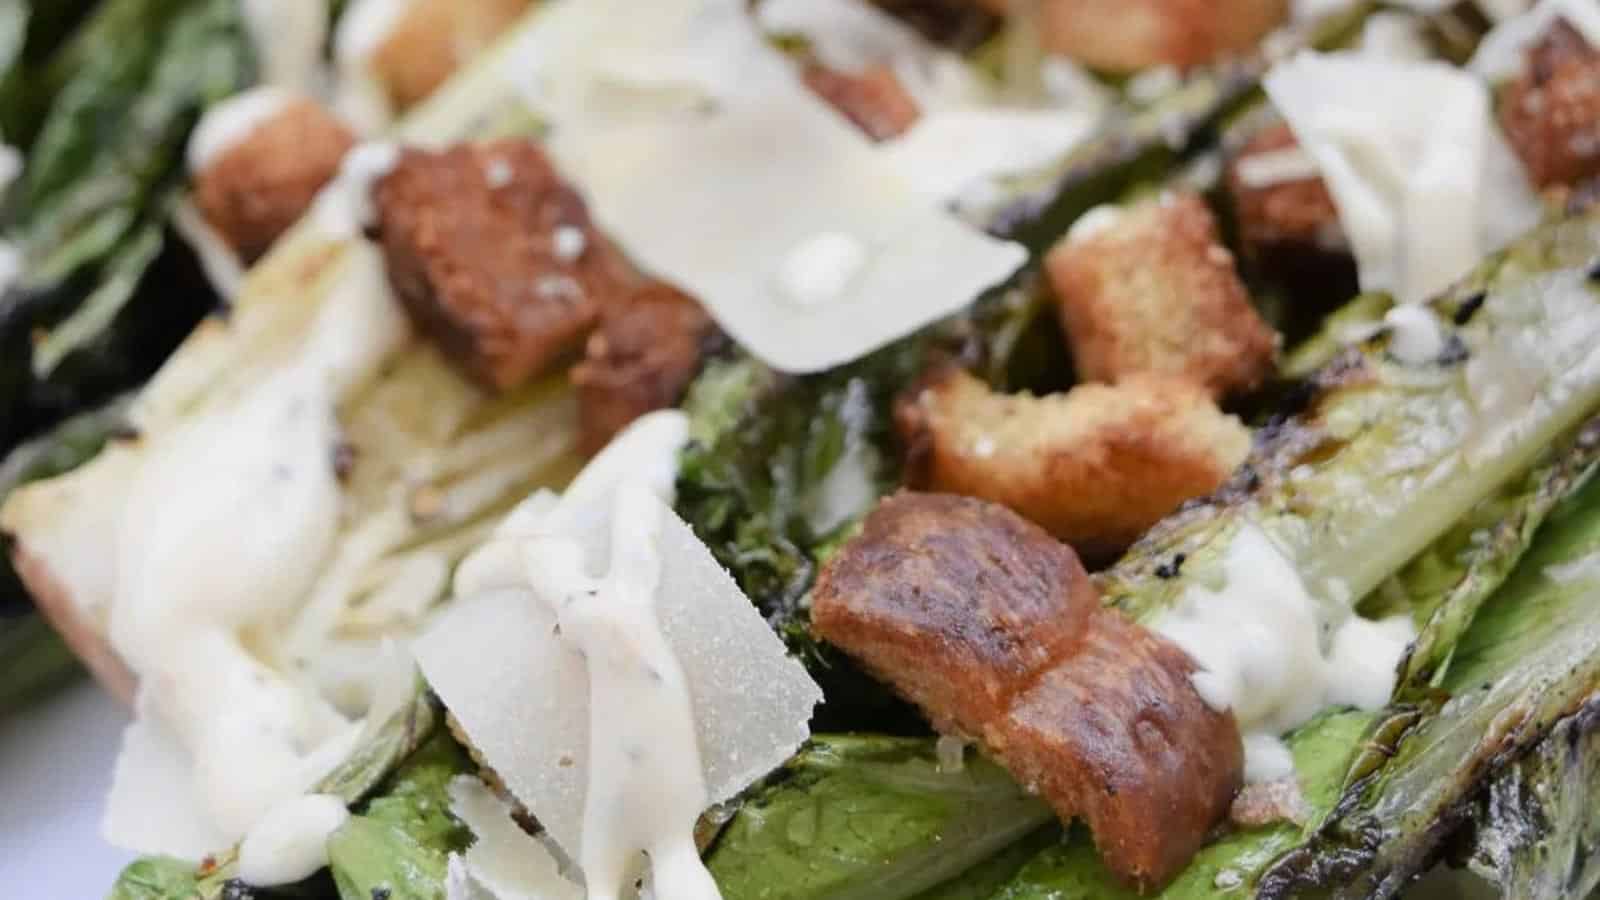 grilled-caesar-salad-recipe-image.